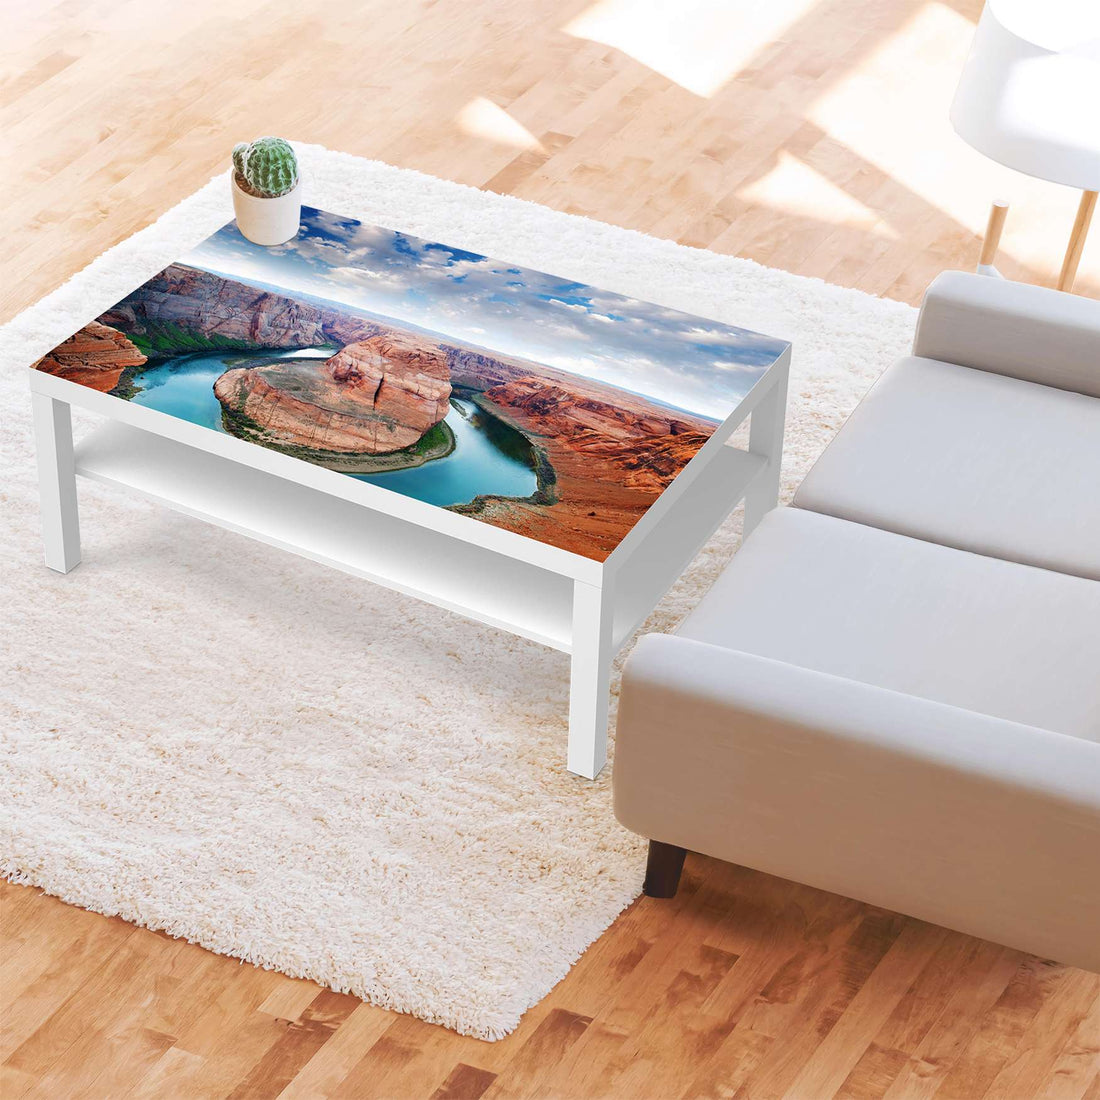 Klebefolie Grand Canyon - IKEA Lack Tisch 118x78 cm - Wohnzimmer